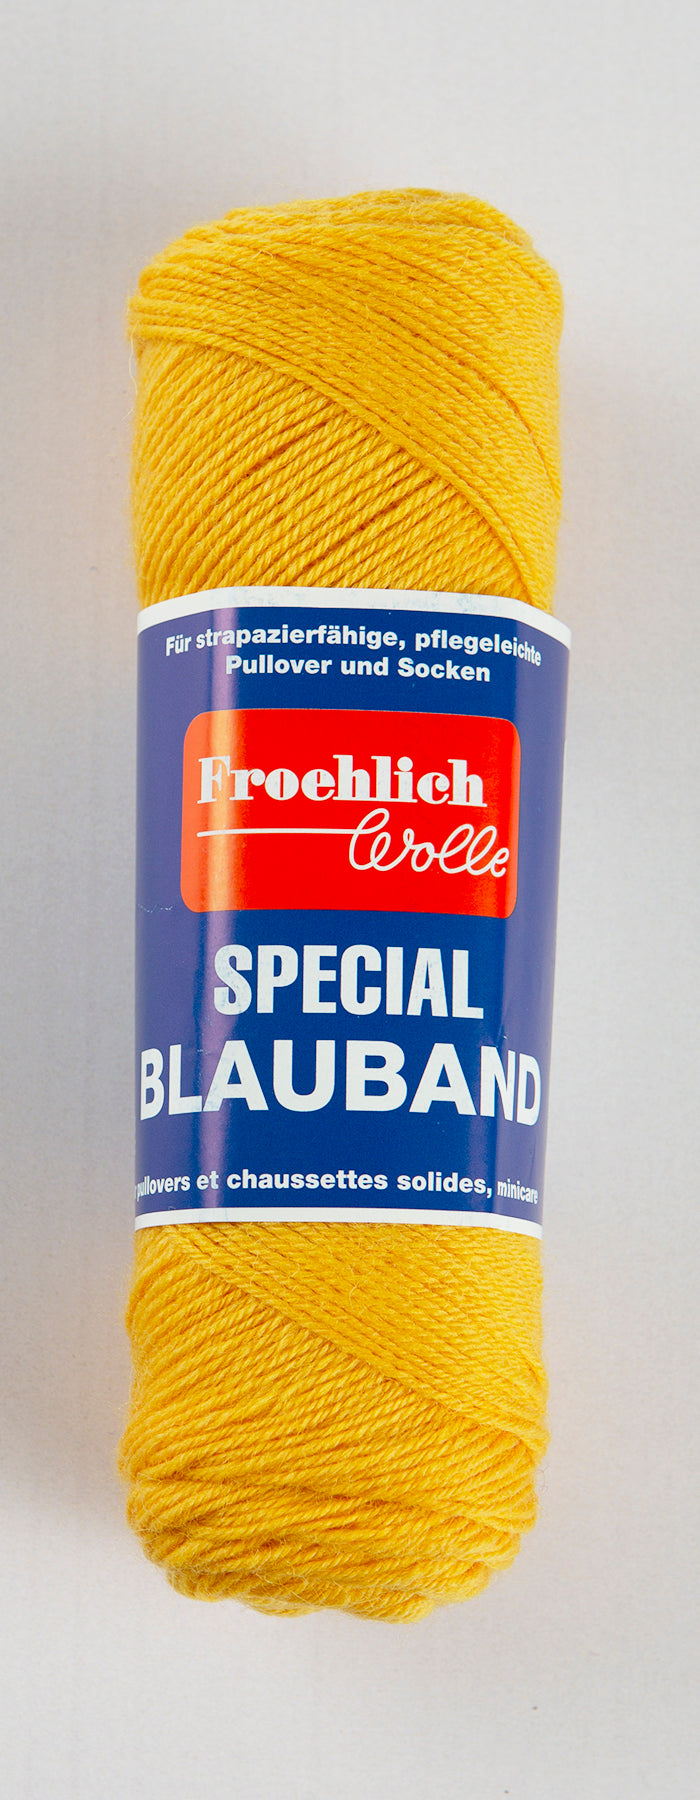 Froelich Blauband Strømpegarn 64